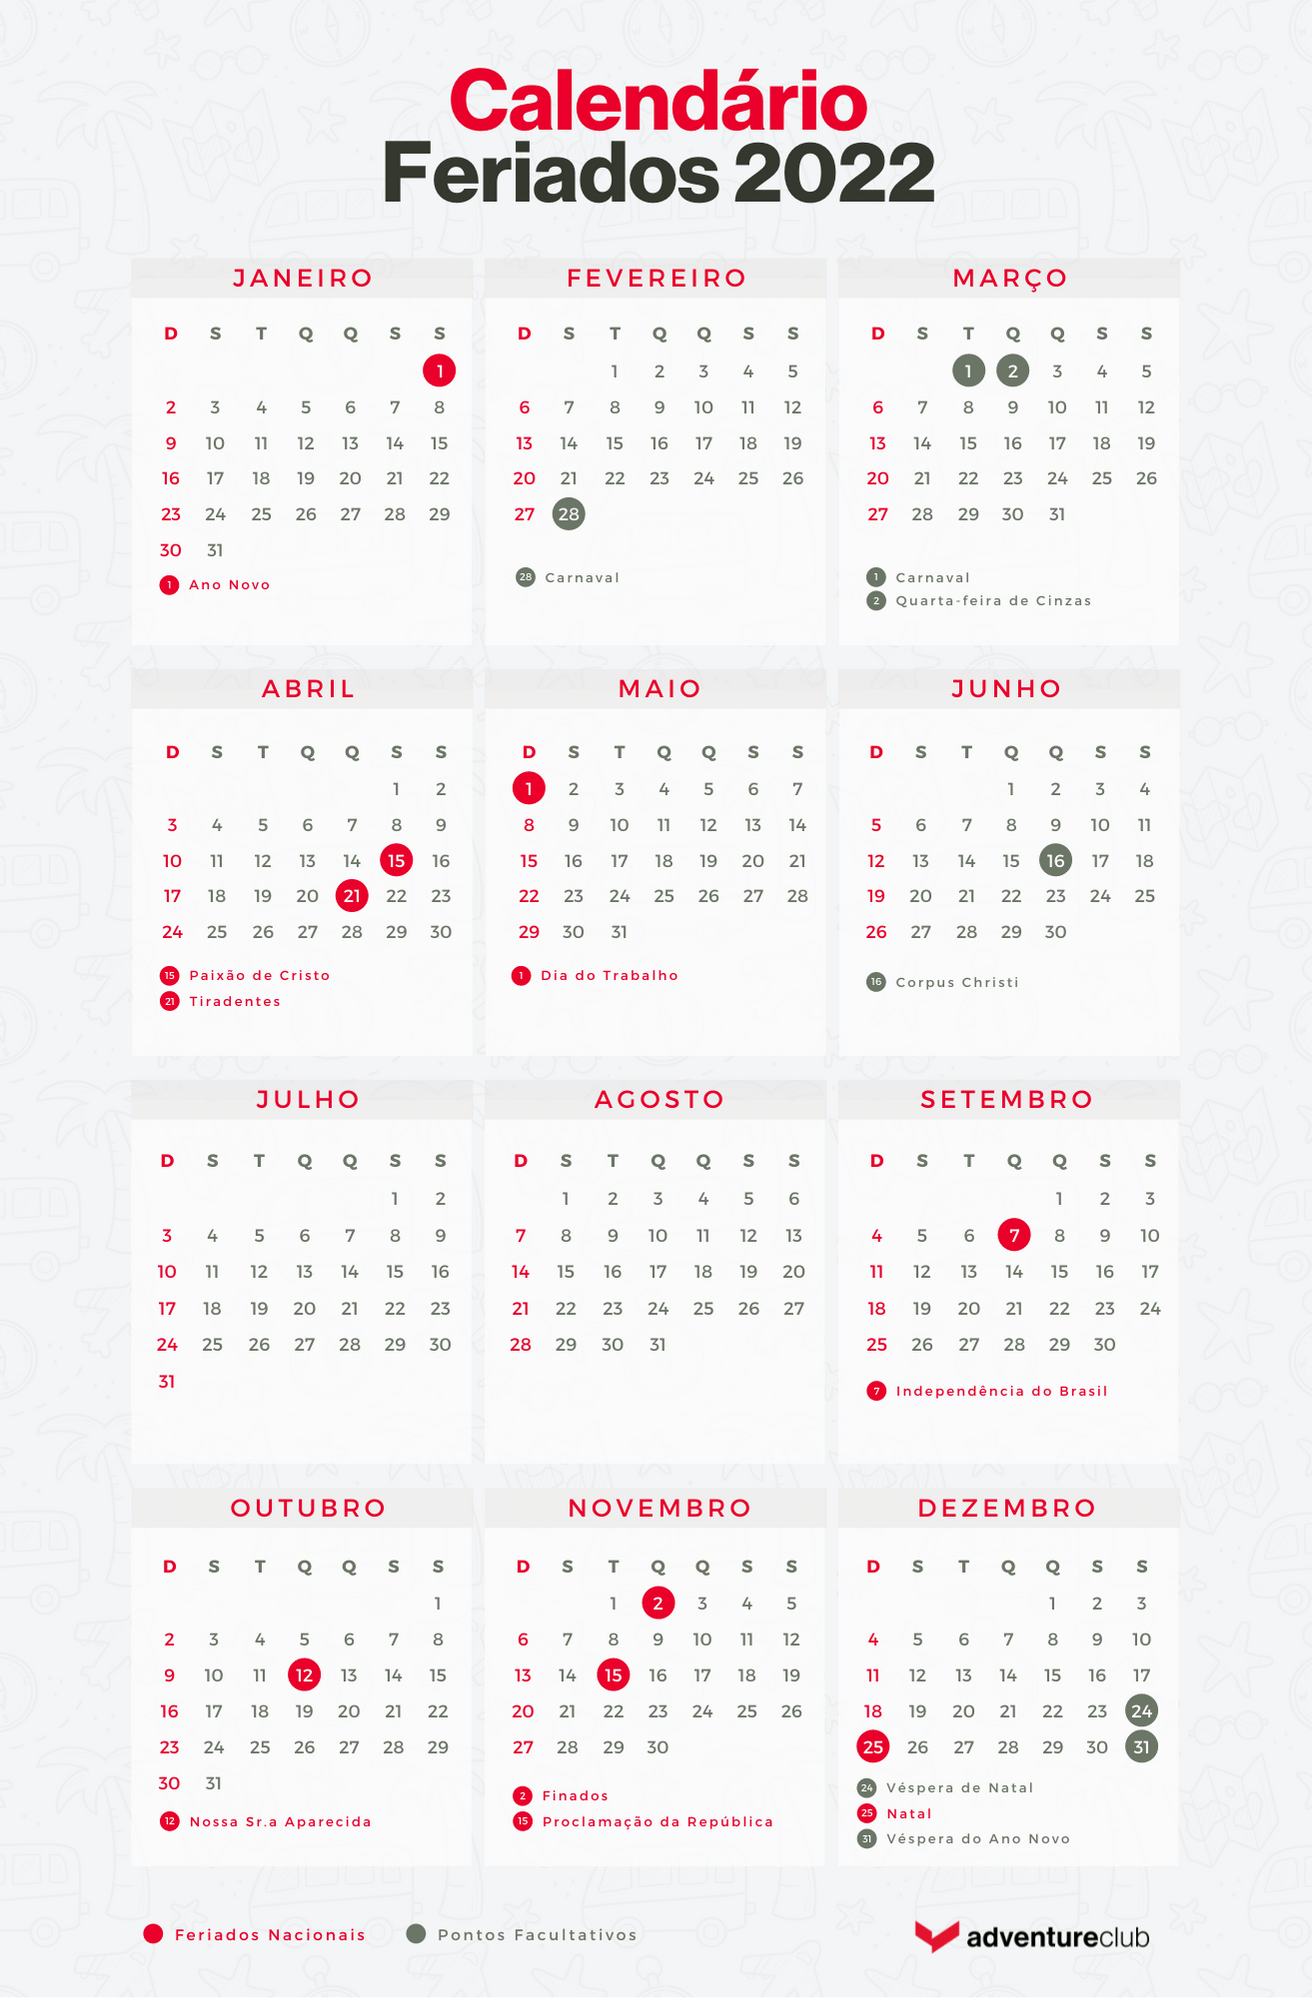 Calendário Feriados de 2022 Adventure Club